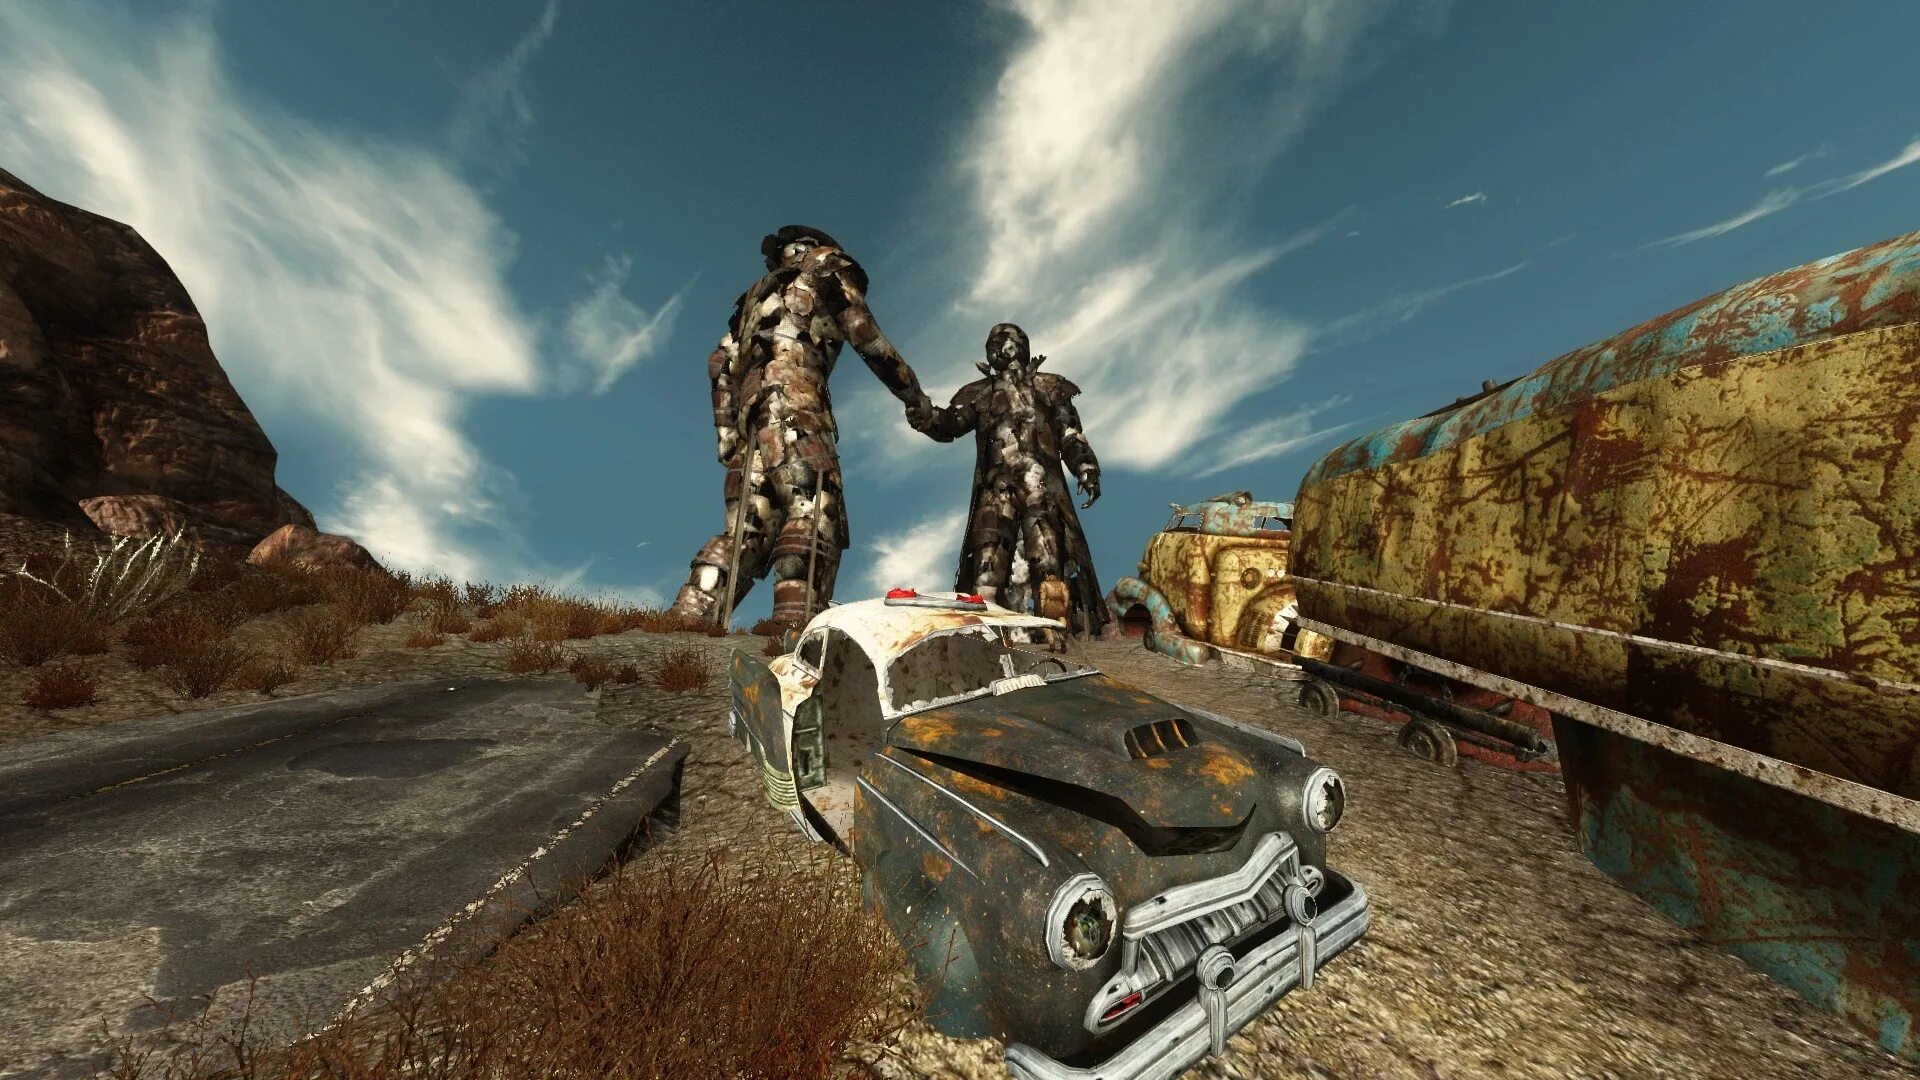 Мод на реалити. Fallout New Vegas проект Невада. Фоллаут 3 мод Невада. Фоллаут Невада броня. Хайвеймен Fallout New Vegas.